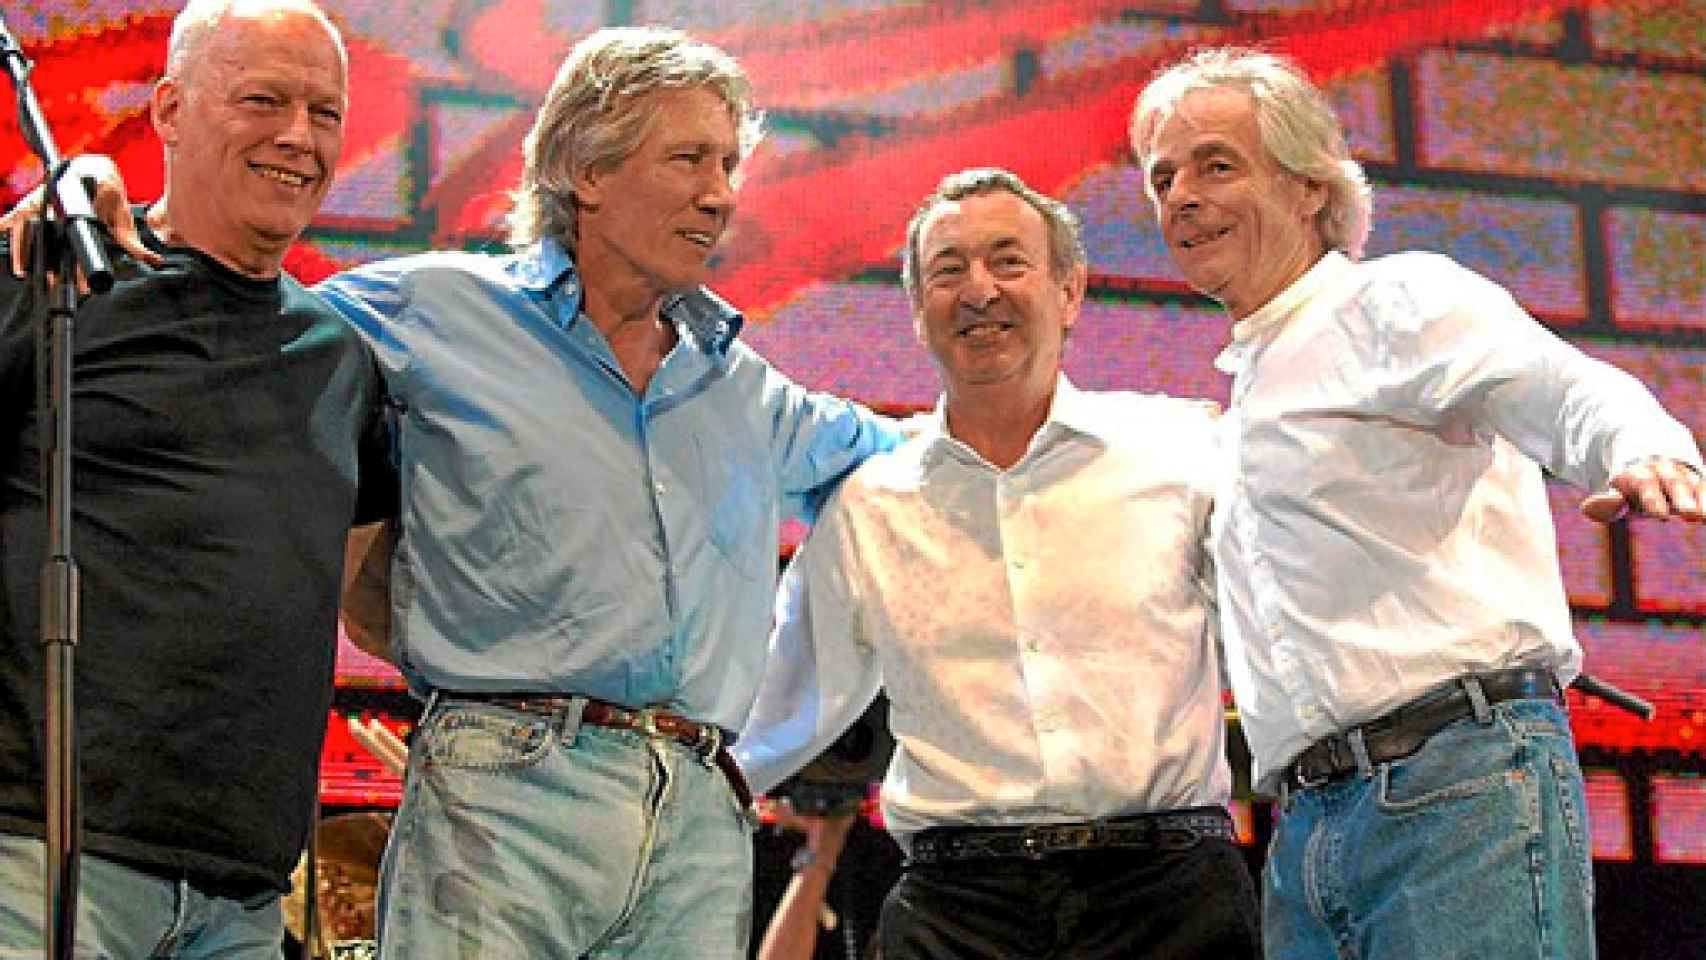 Image: Nuevo disco de Pink Floyd, 20 años después